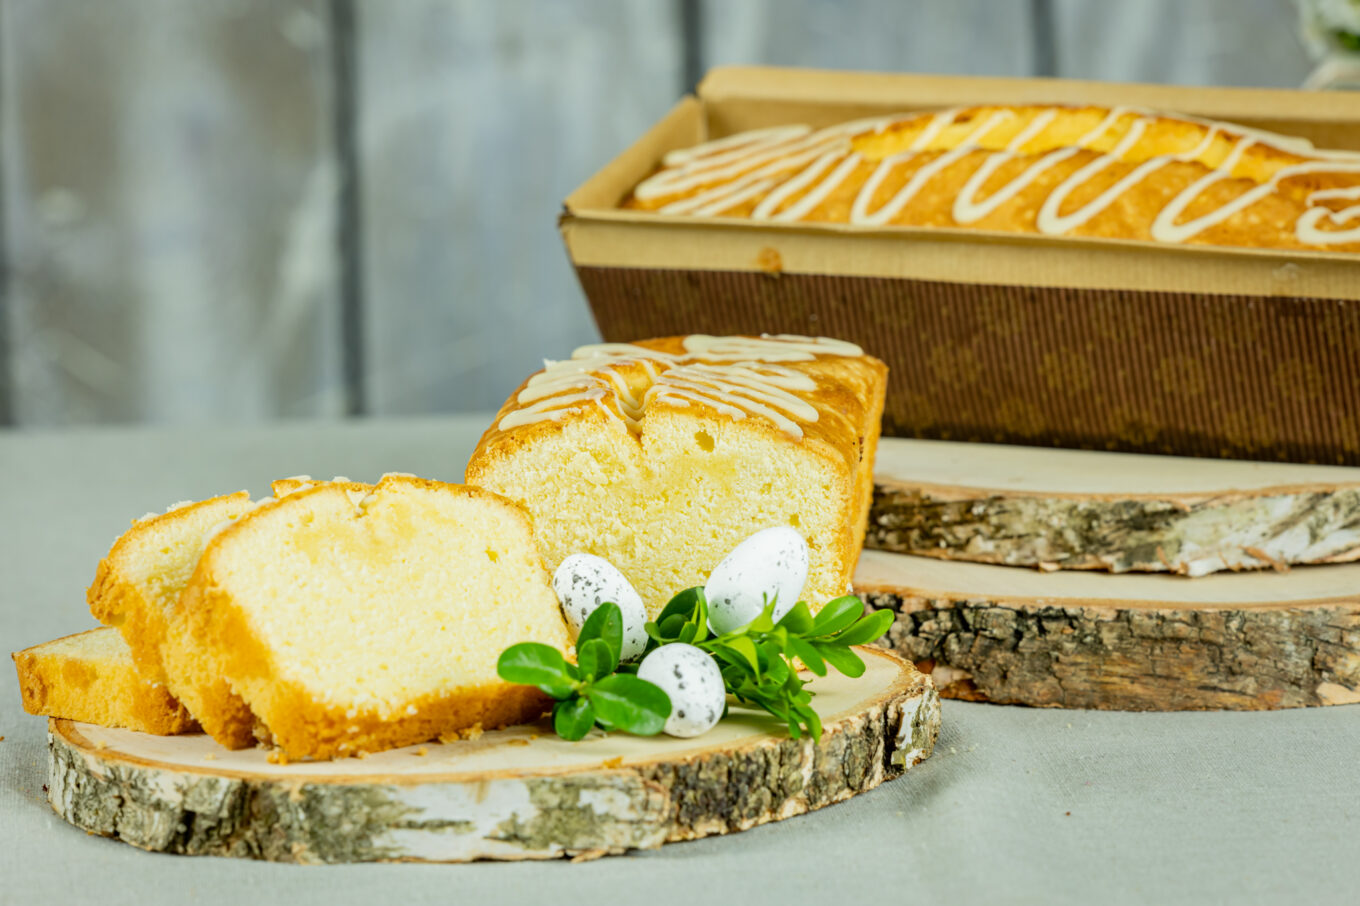 babka cytrynowa Wielkanoc Cukiernia Jacek Placek to synonim smaku domowych ciast z naturalnych produktów.